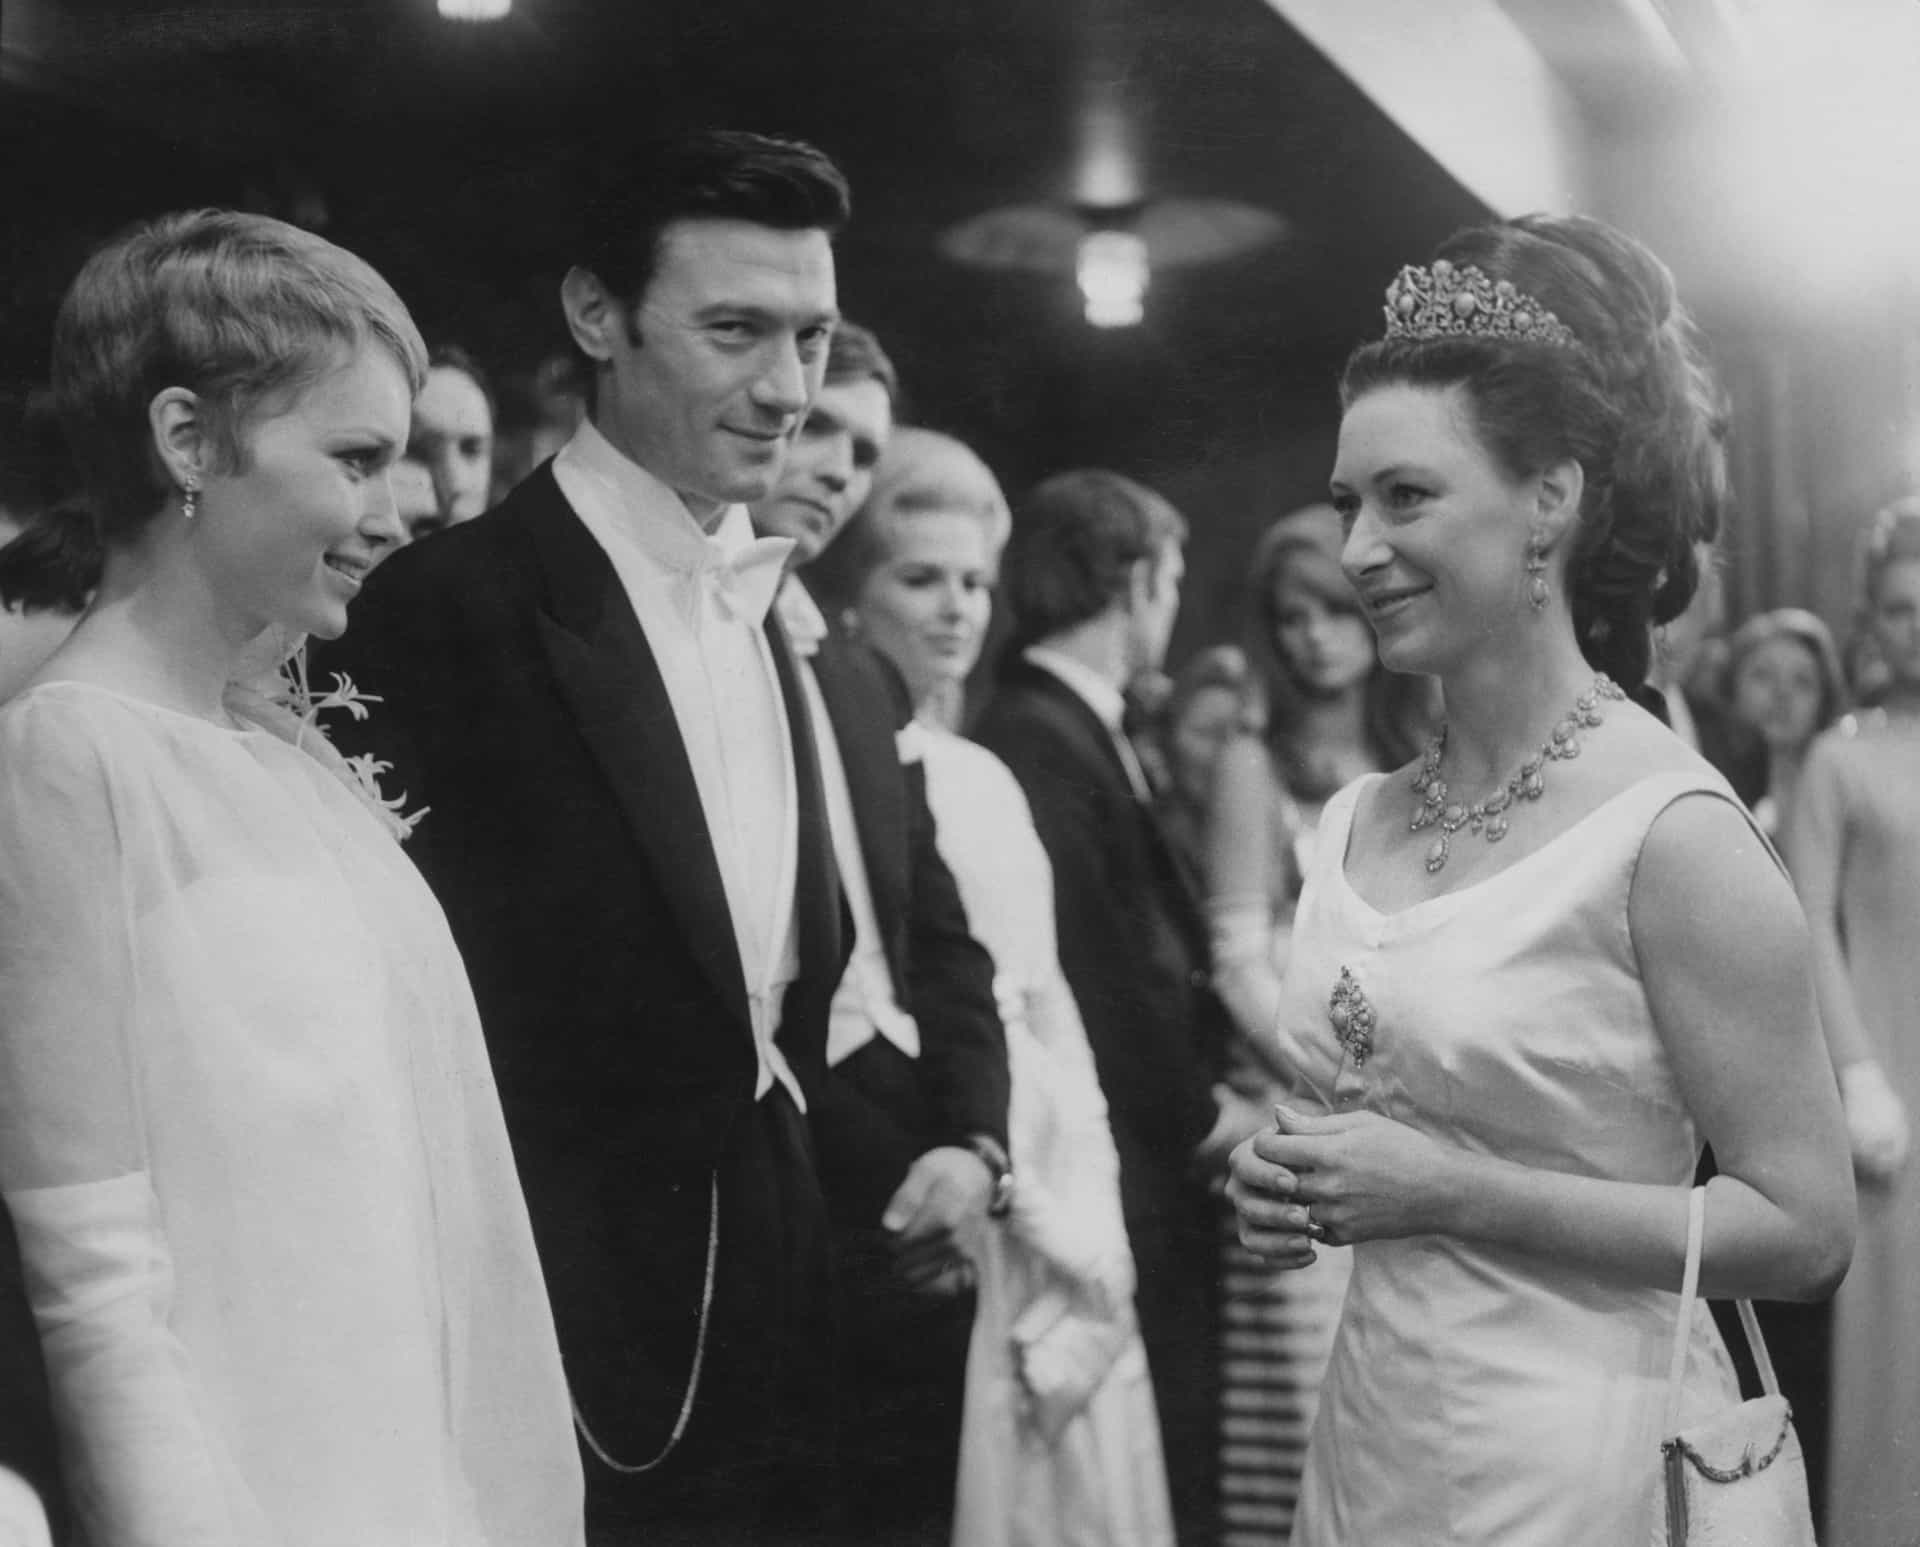 Margaret trifft den Schauspieler Laurence Harvey und Mia Farrow bei einer Vorführung von "Der Widerspenstigen Zähmung" in London, 1967.